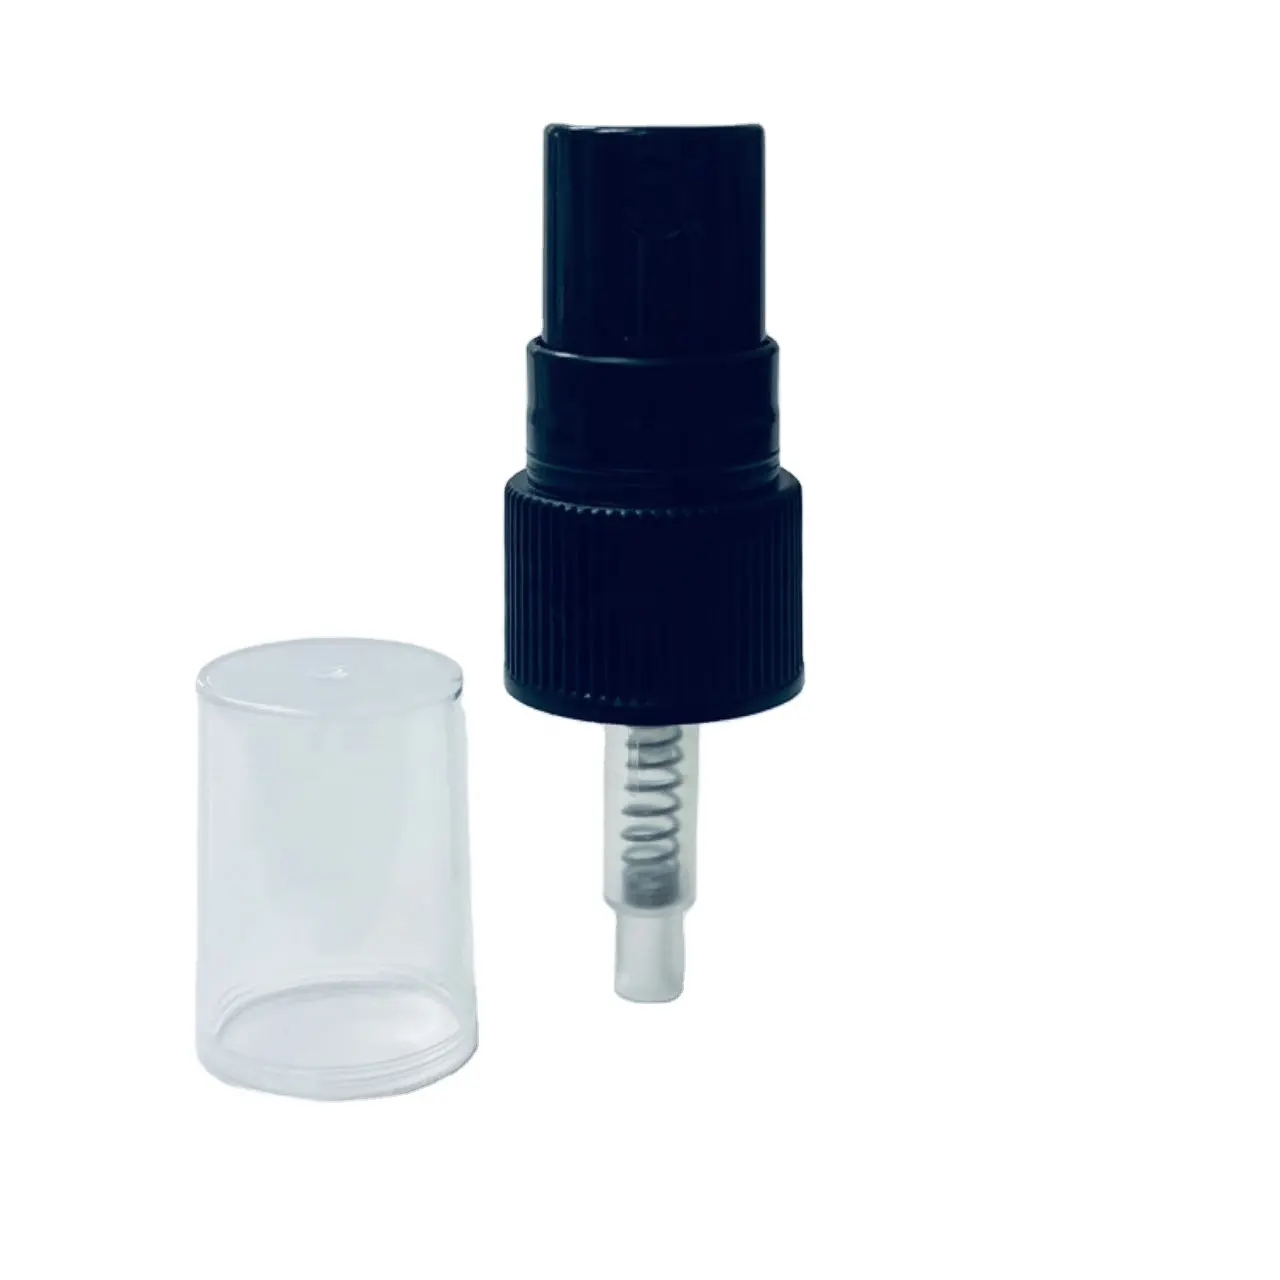 0.12 cc 18/410 spruzzatore di profumo con pompa a spruzzo per nebulizzazione Fine in plastica di alta qualità con mezzo tappo in PP